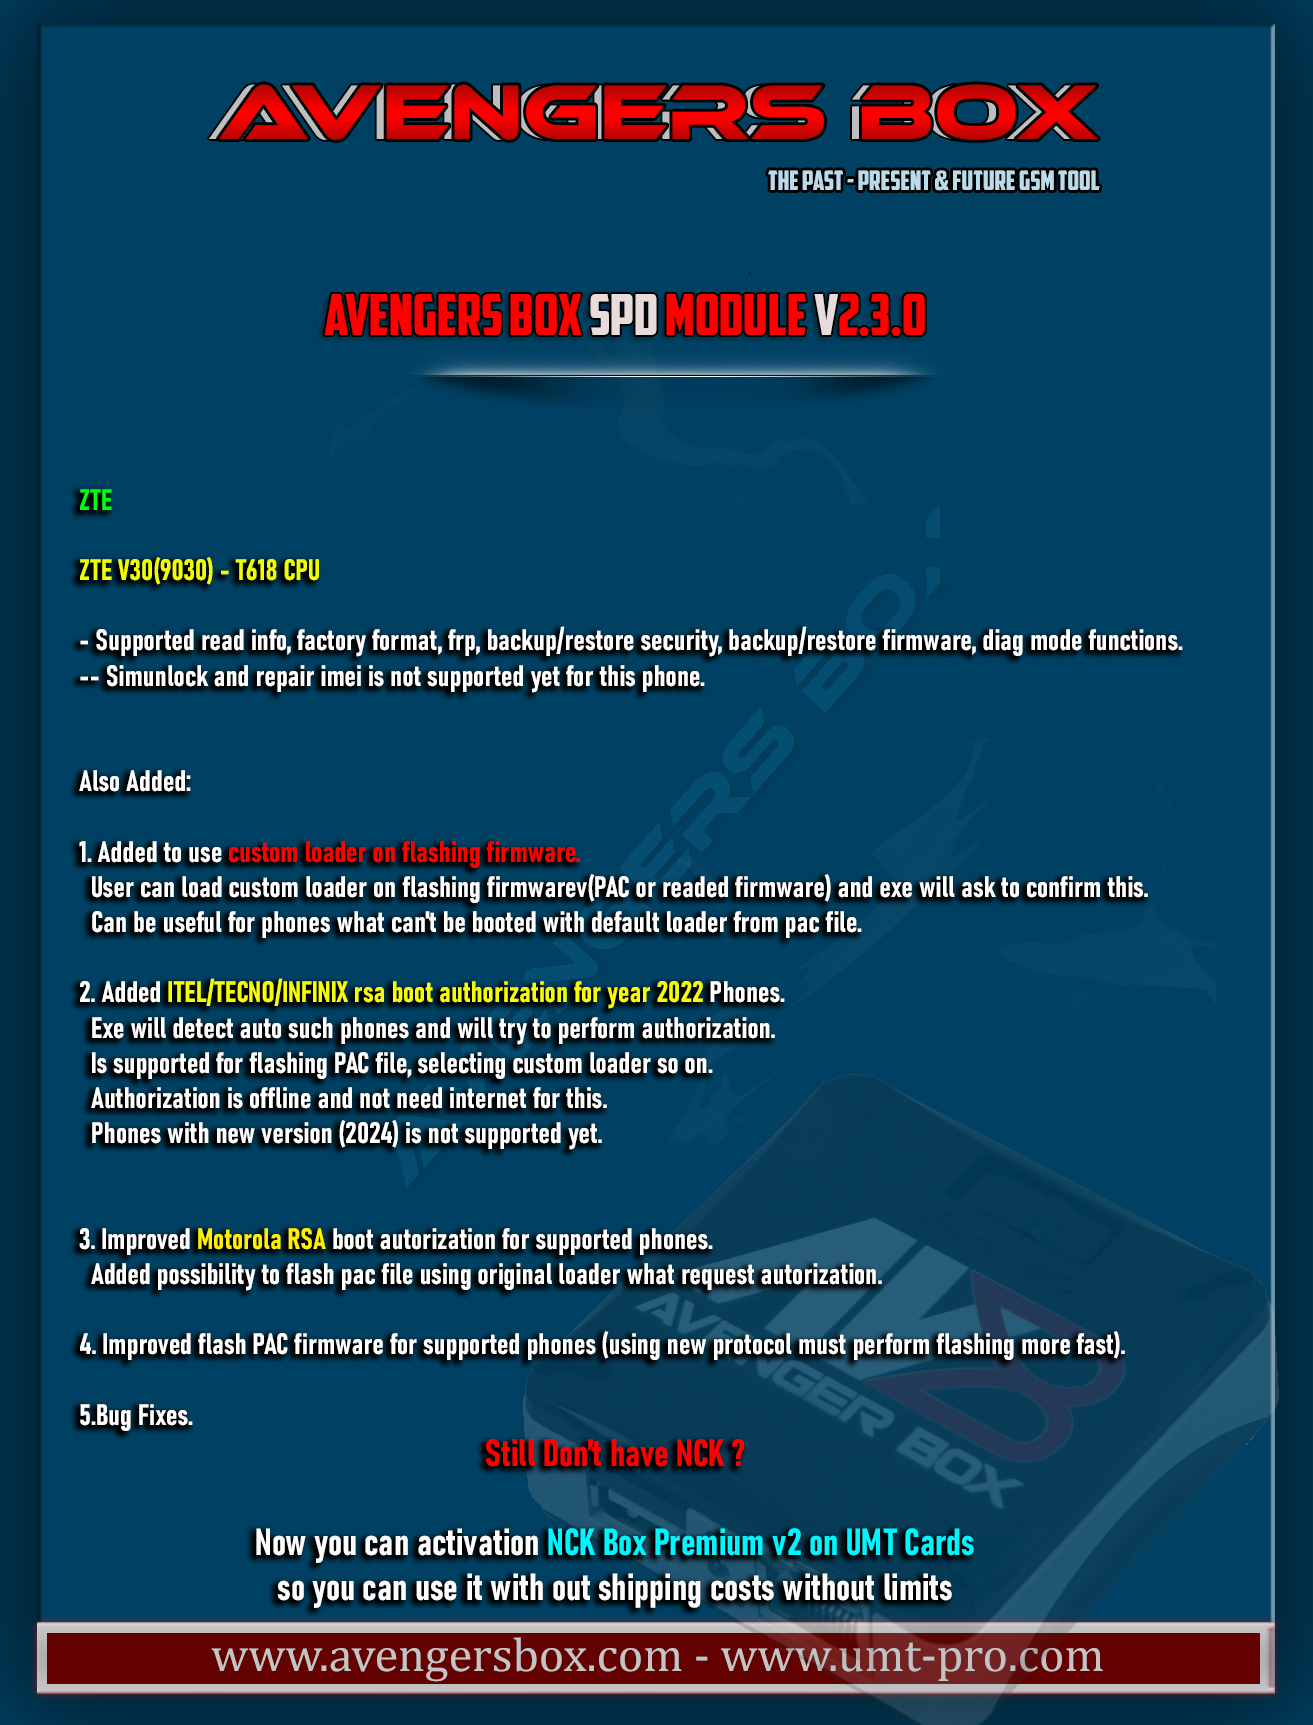 Avengers Box / UMTPro SPD Module v2.3.0 Released